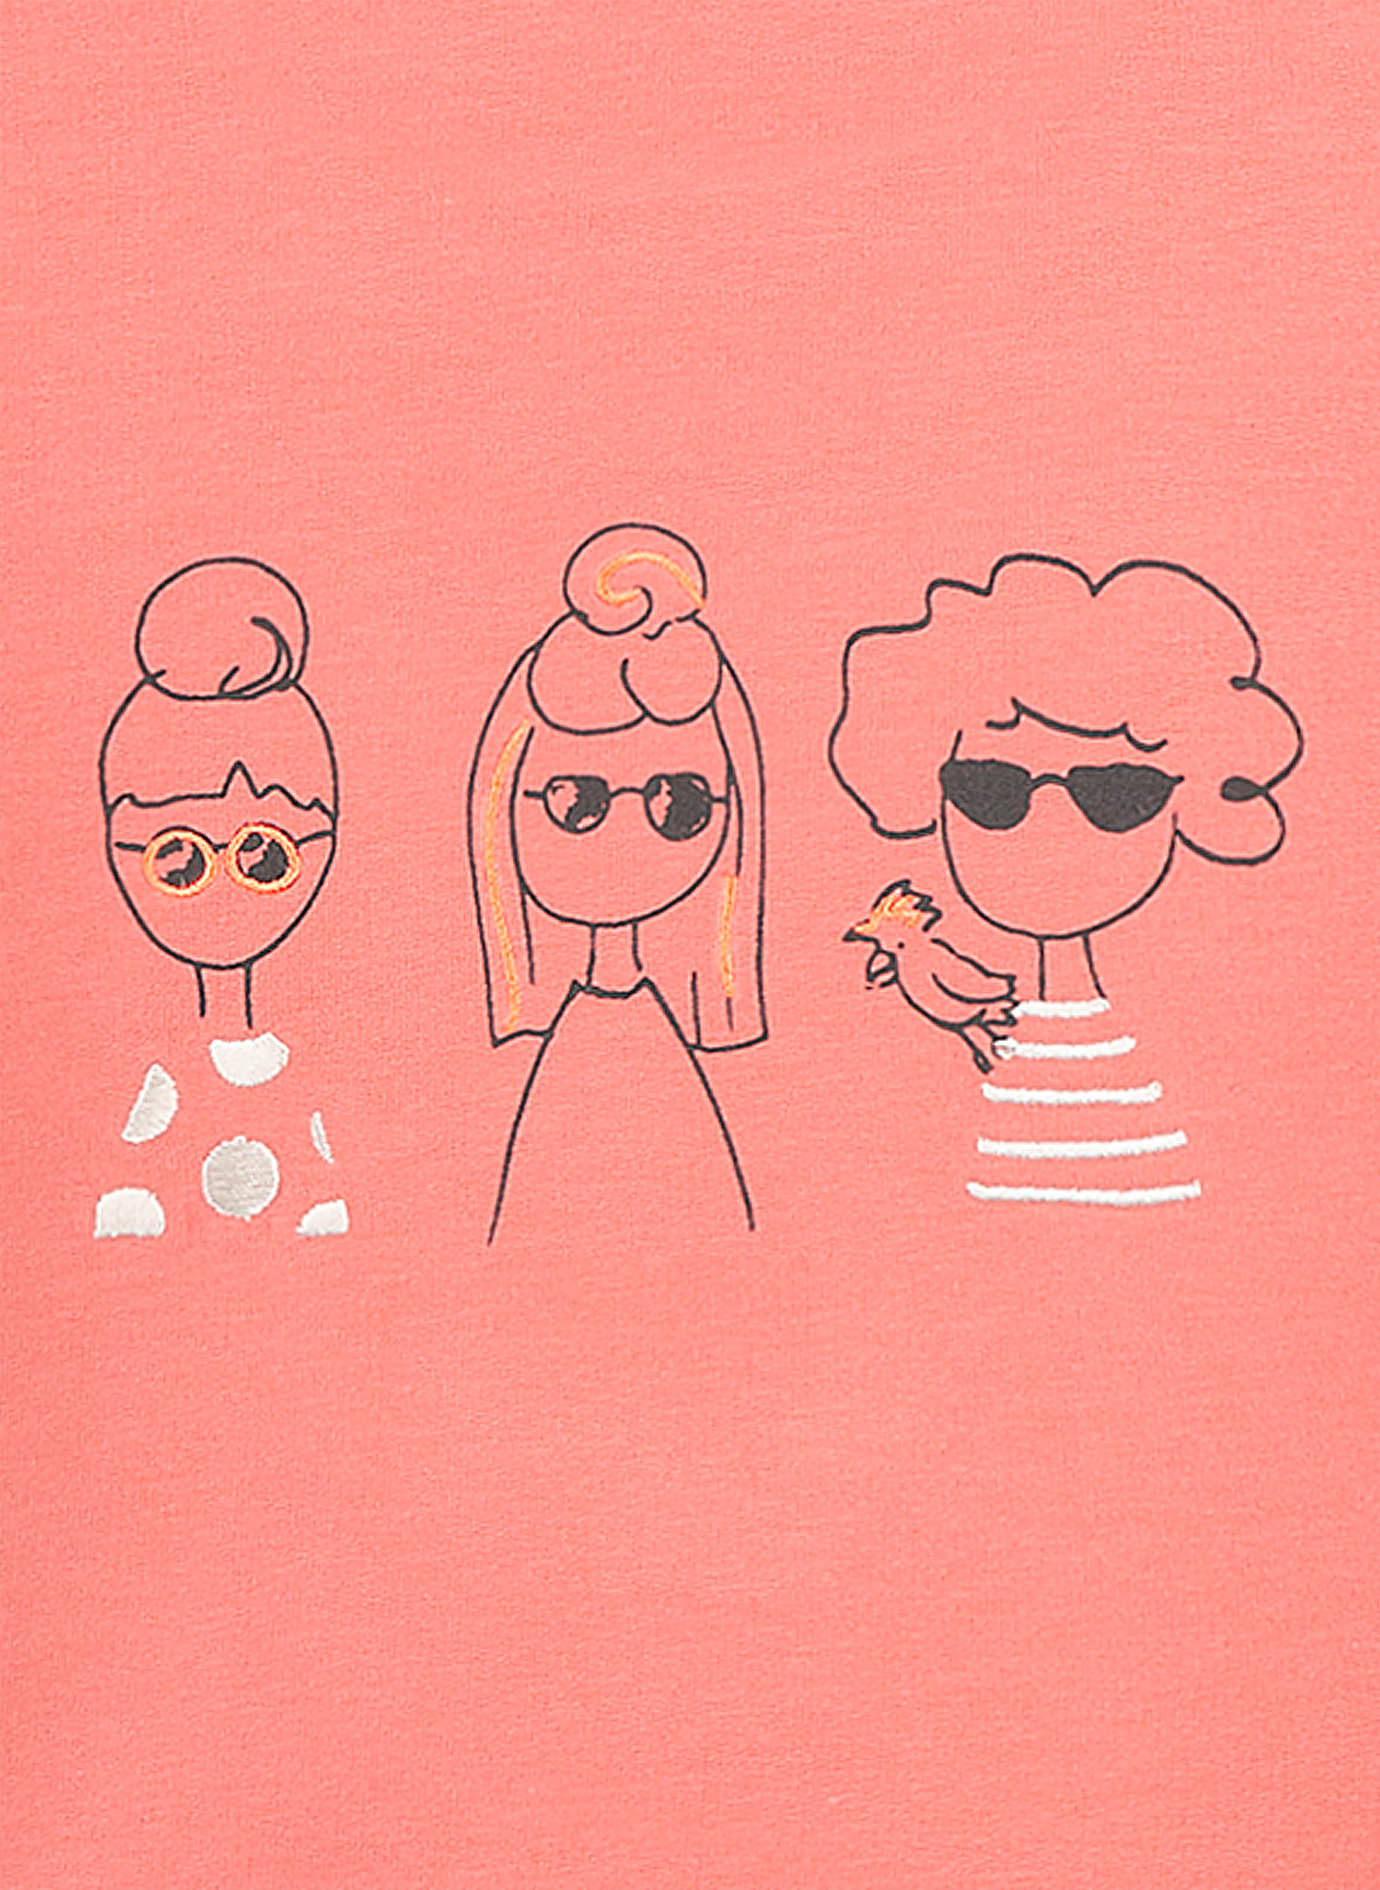 Mädchen-Sweatshirt Pink Tropical